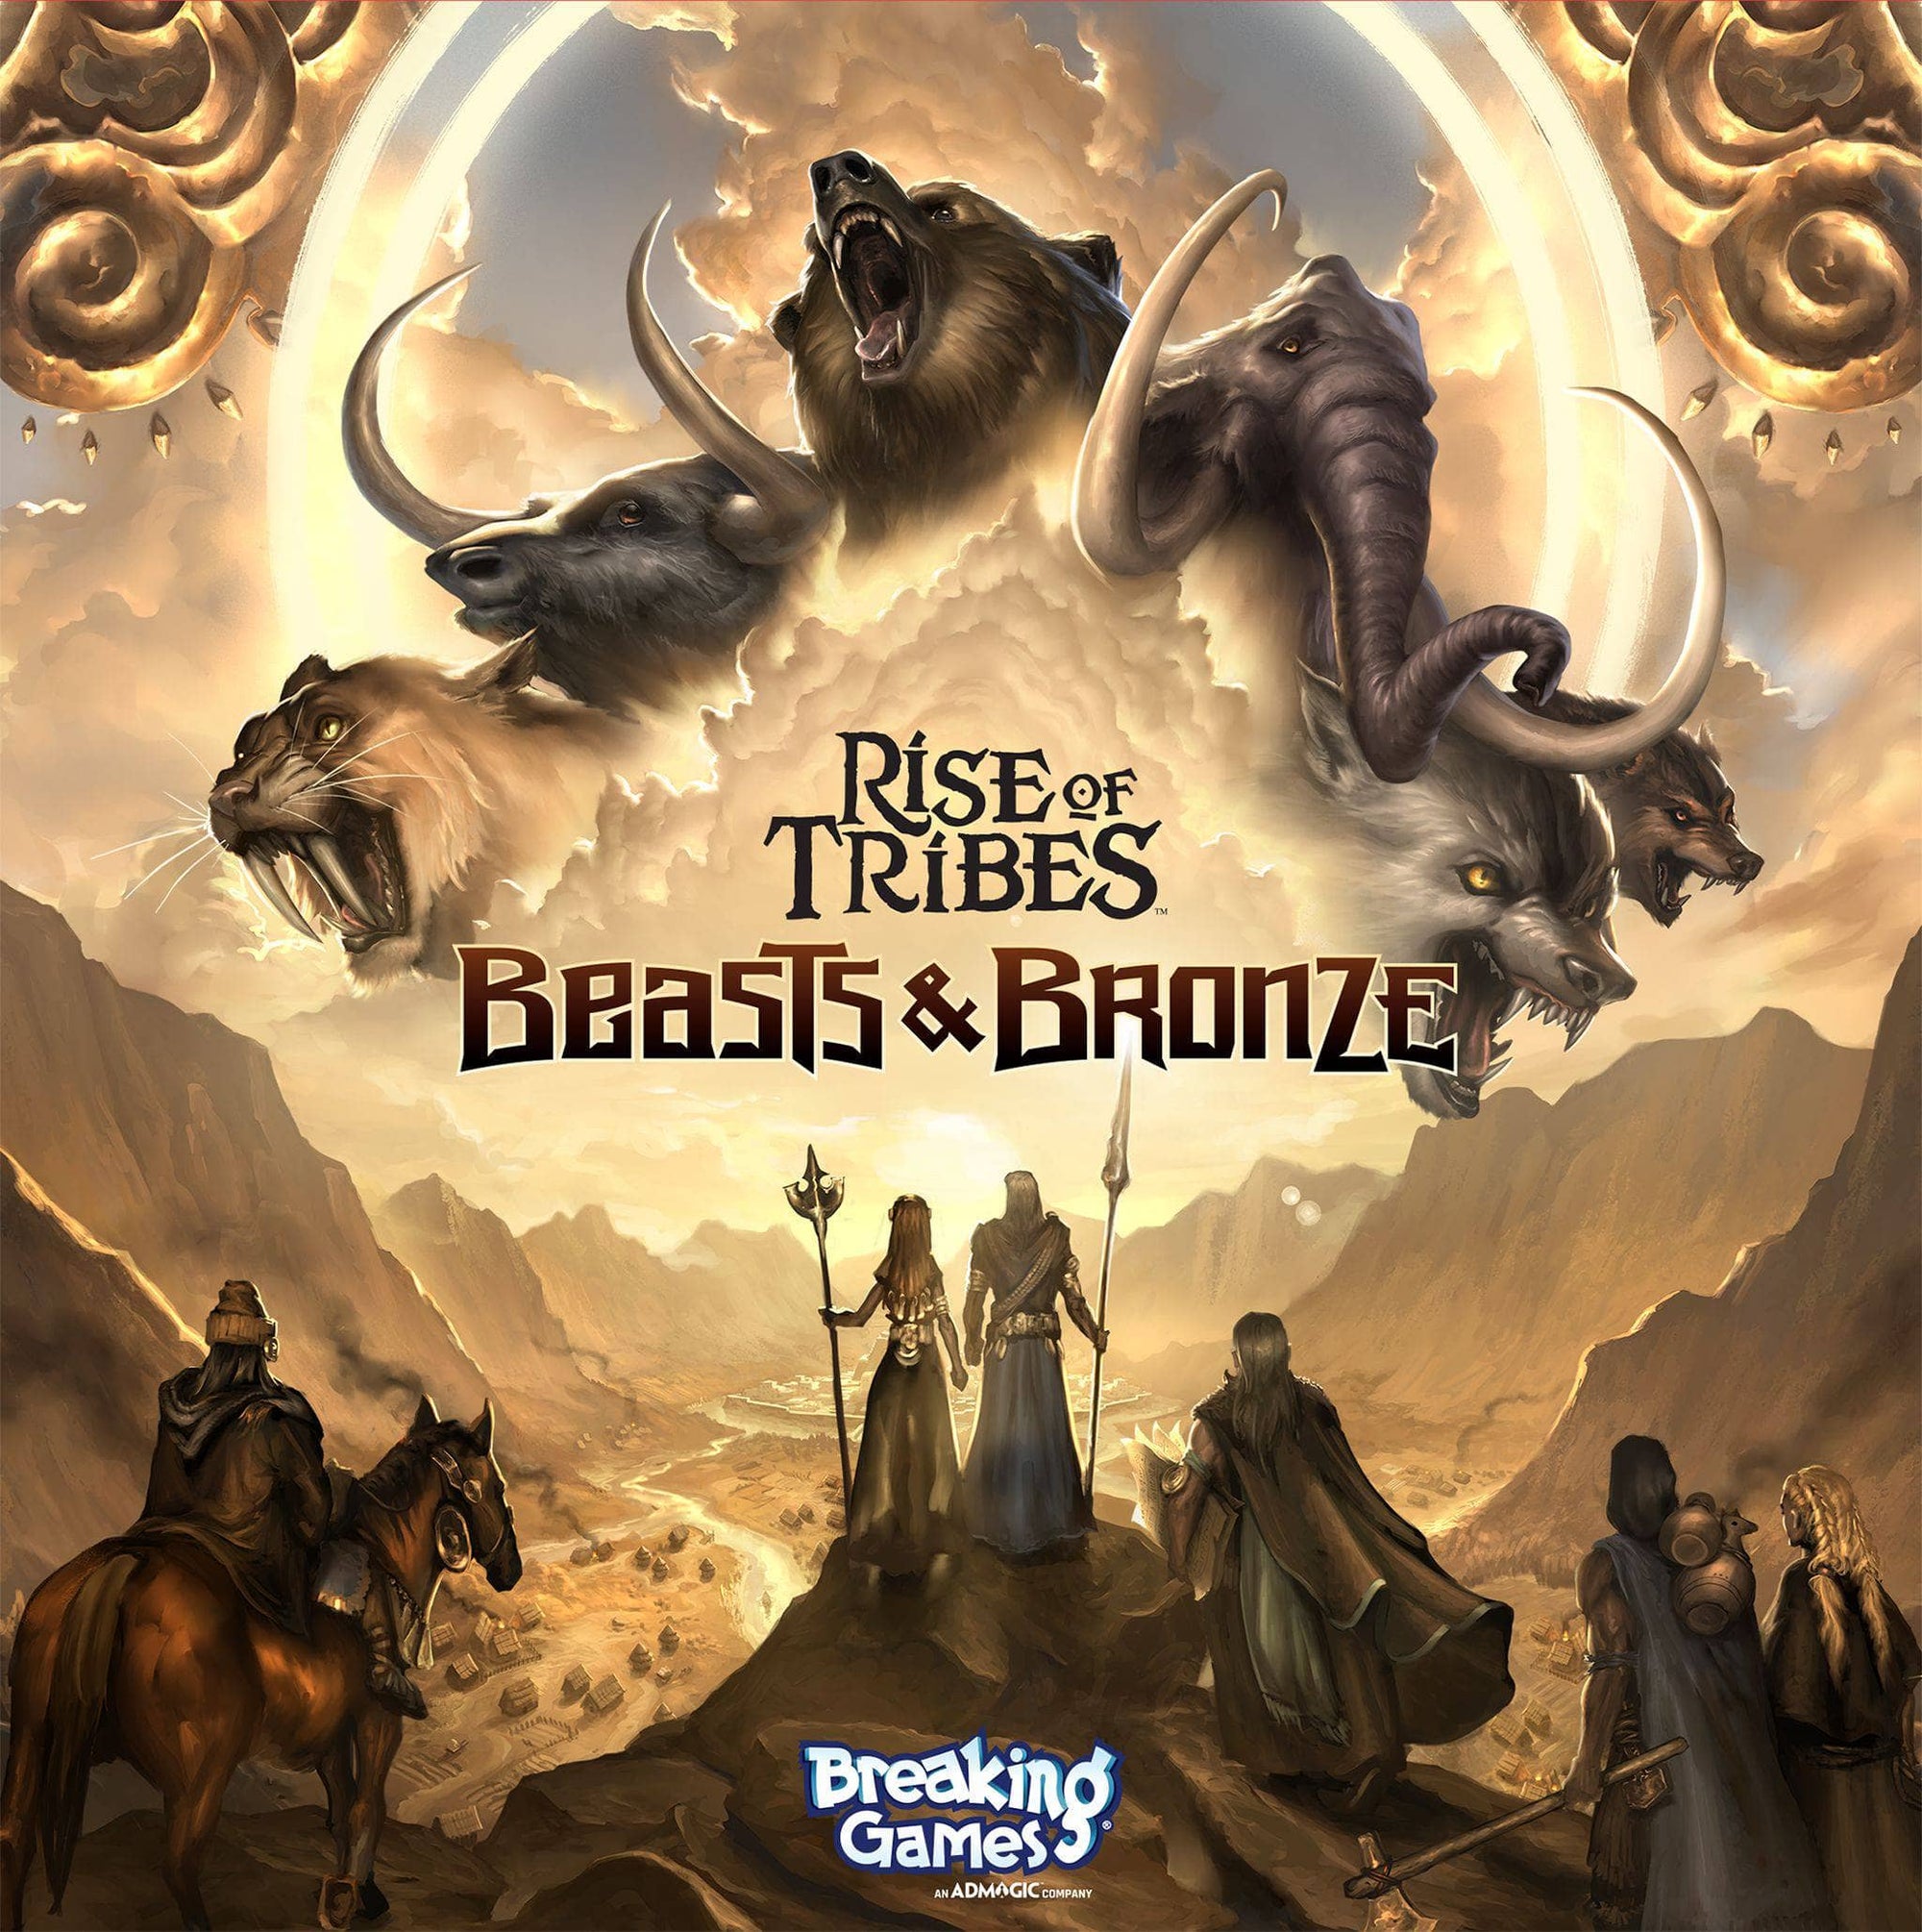 A törzsek felemelkedése: Beasts & Bronze, Vul’Keth invázió plusz Mesa promóciós csempecsomag (Kickstarter Special)